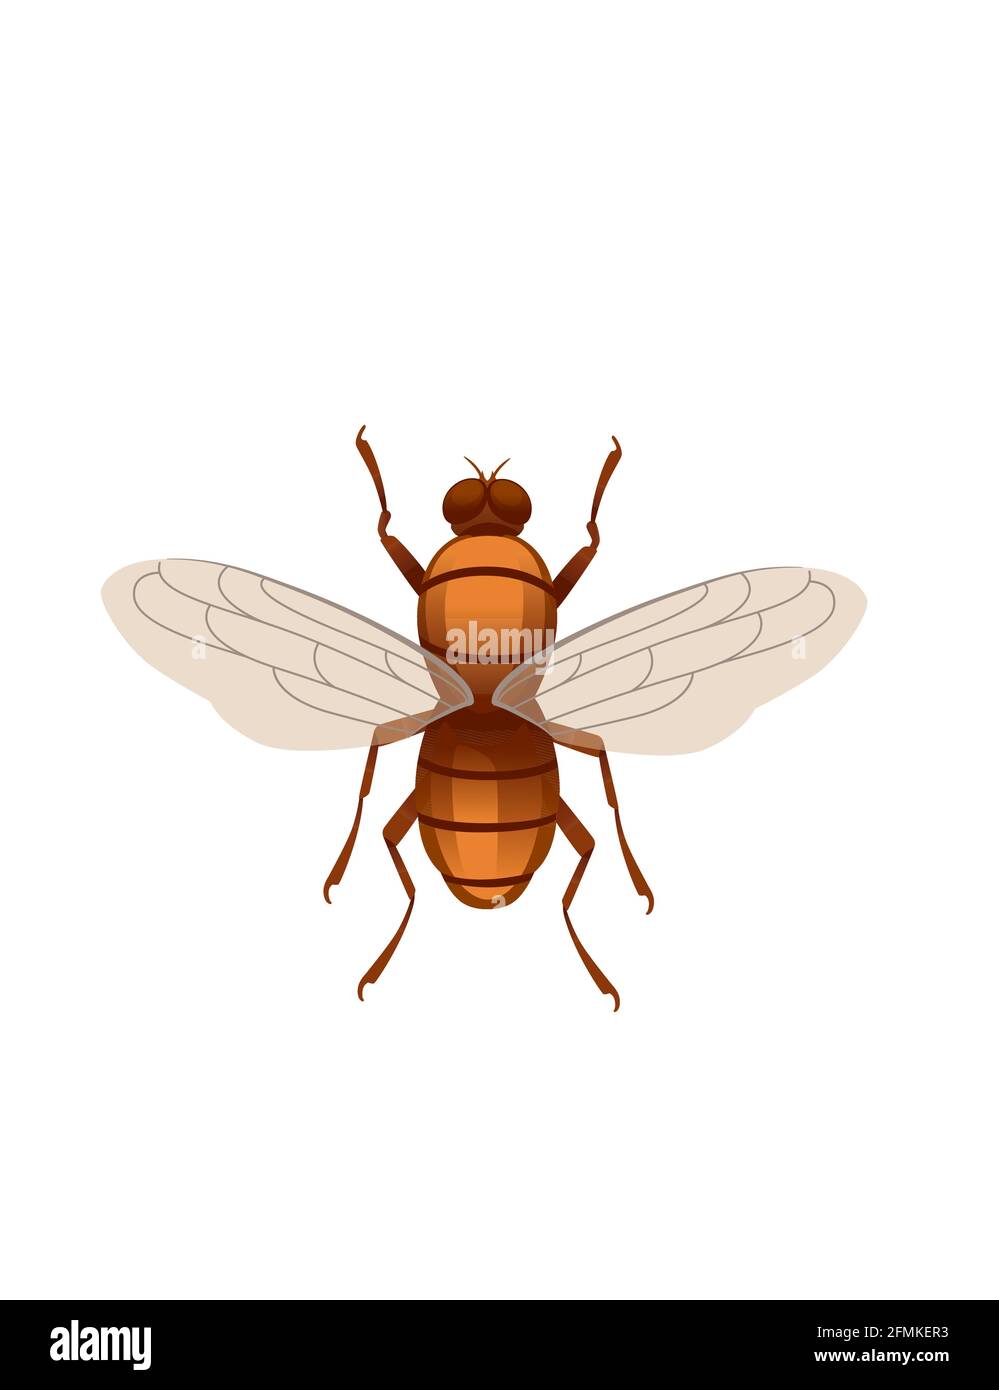 Midge fliegende Insekten Cartoon fliegen Design Vektor Illustration auf weiß Draufsicht im Hintergrund Stock Vektor